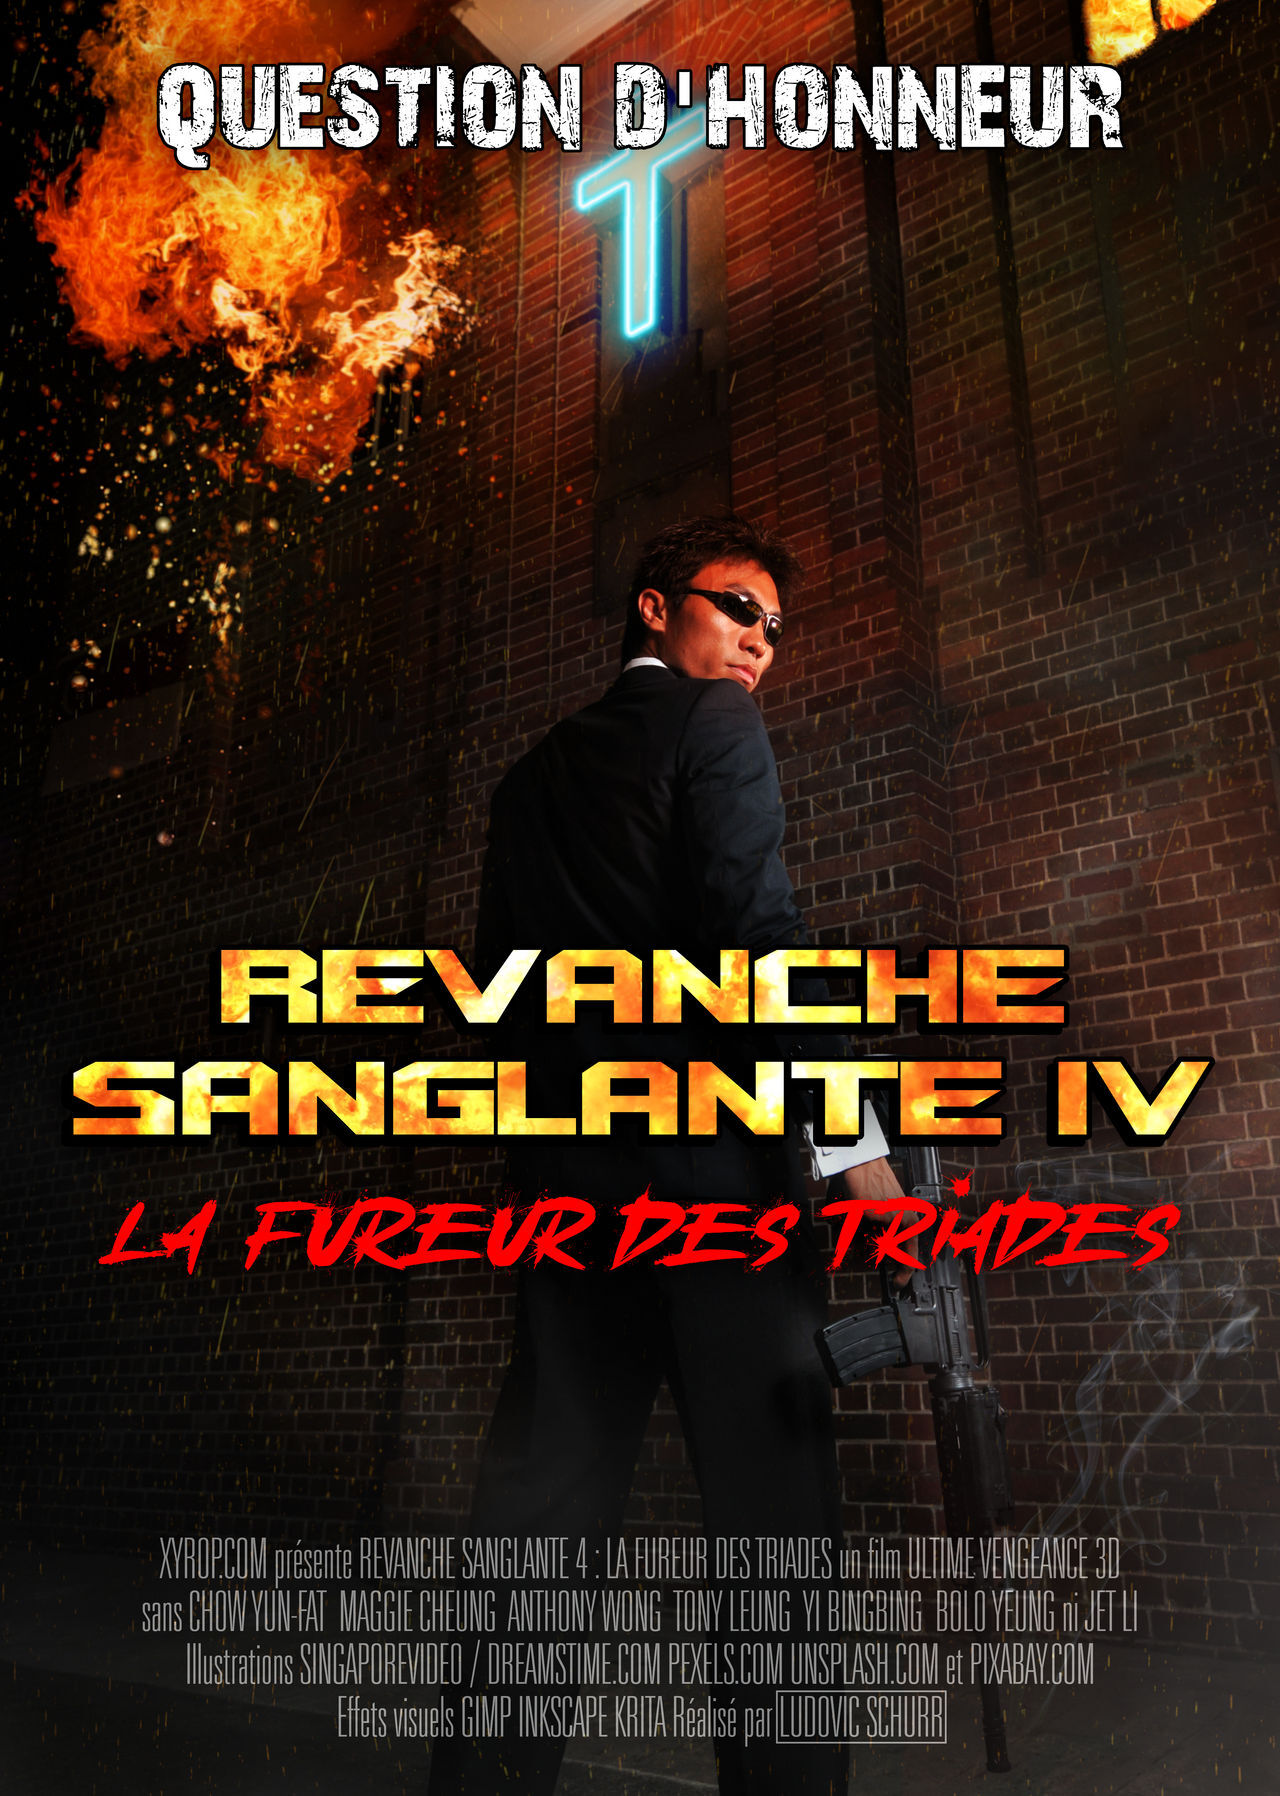 Fausse affiche d'un scénario pour Ultimate Vengeance 3D : Director's cut